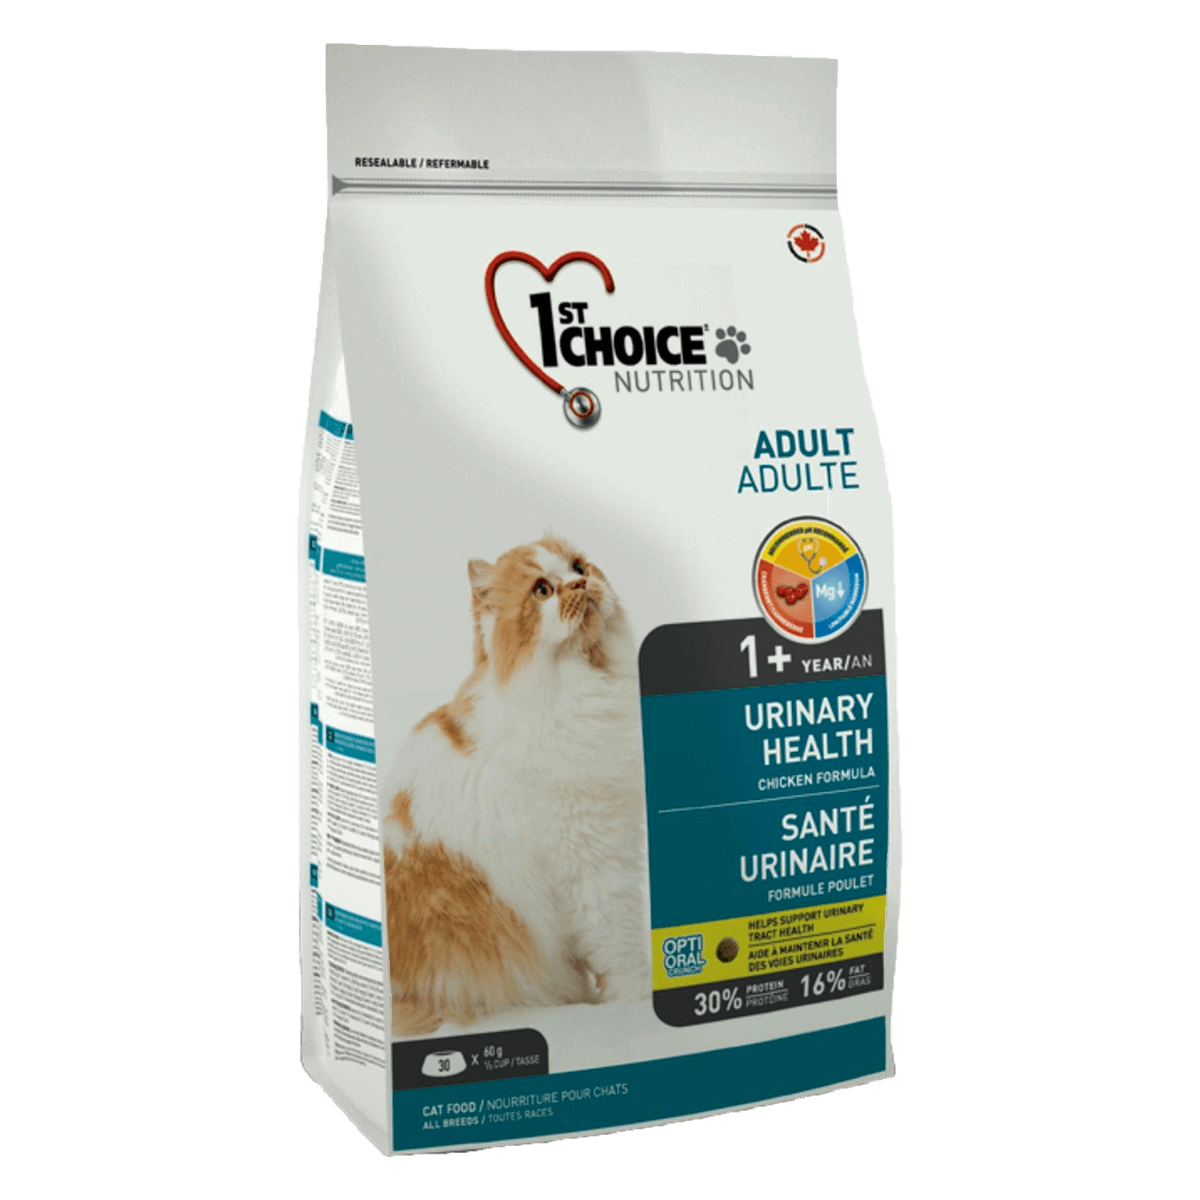 1st Choice Cat Adult Urinary, 5,44 кг - корм для профилактики заболеваний мочевыводящих путей